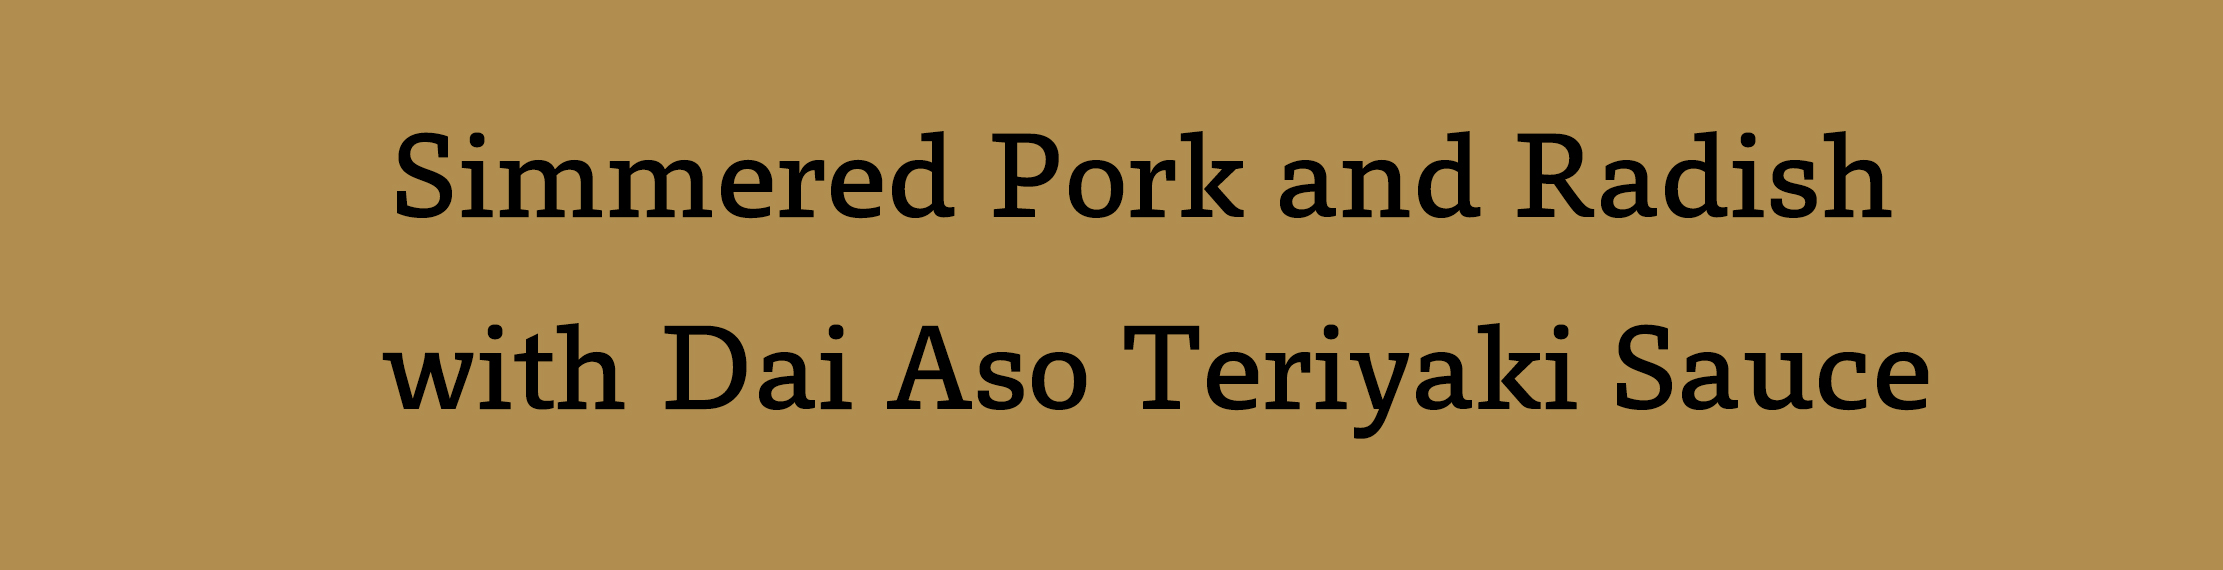 Simmered Pork and Radish with Dai Aso Teriyaki Sauce